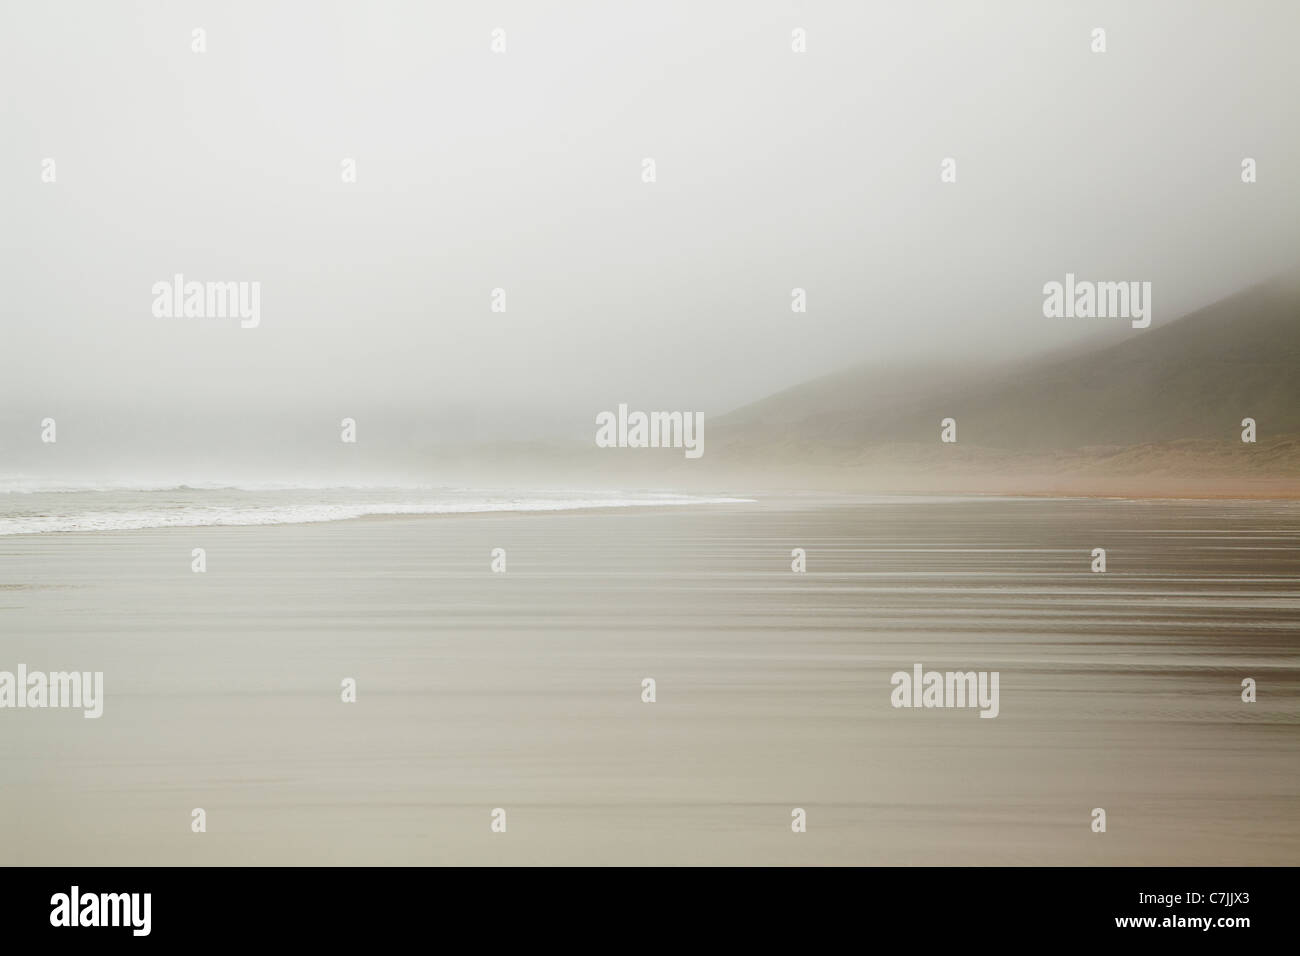 Waves washing up on foggy beach Stock Photo